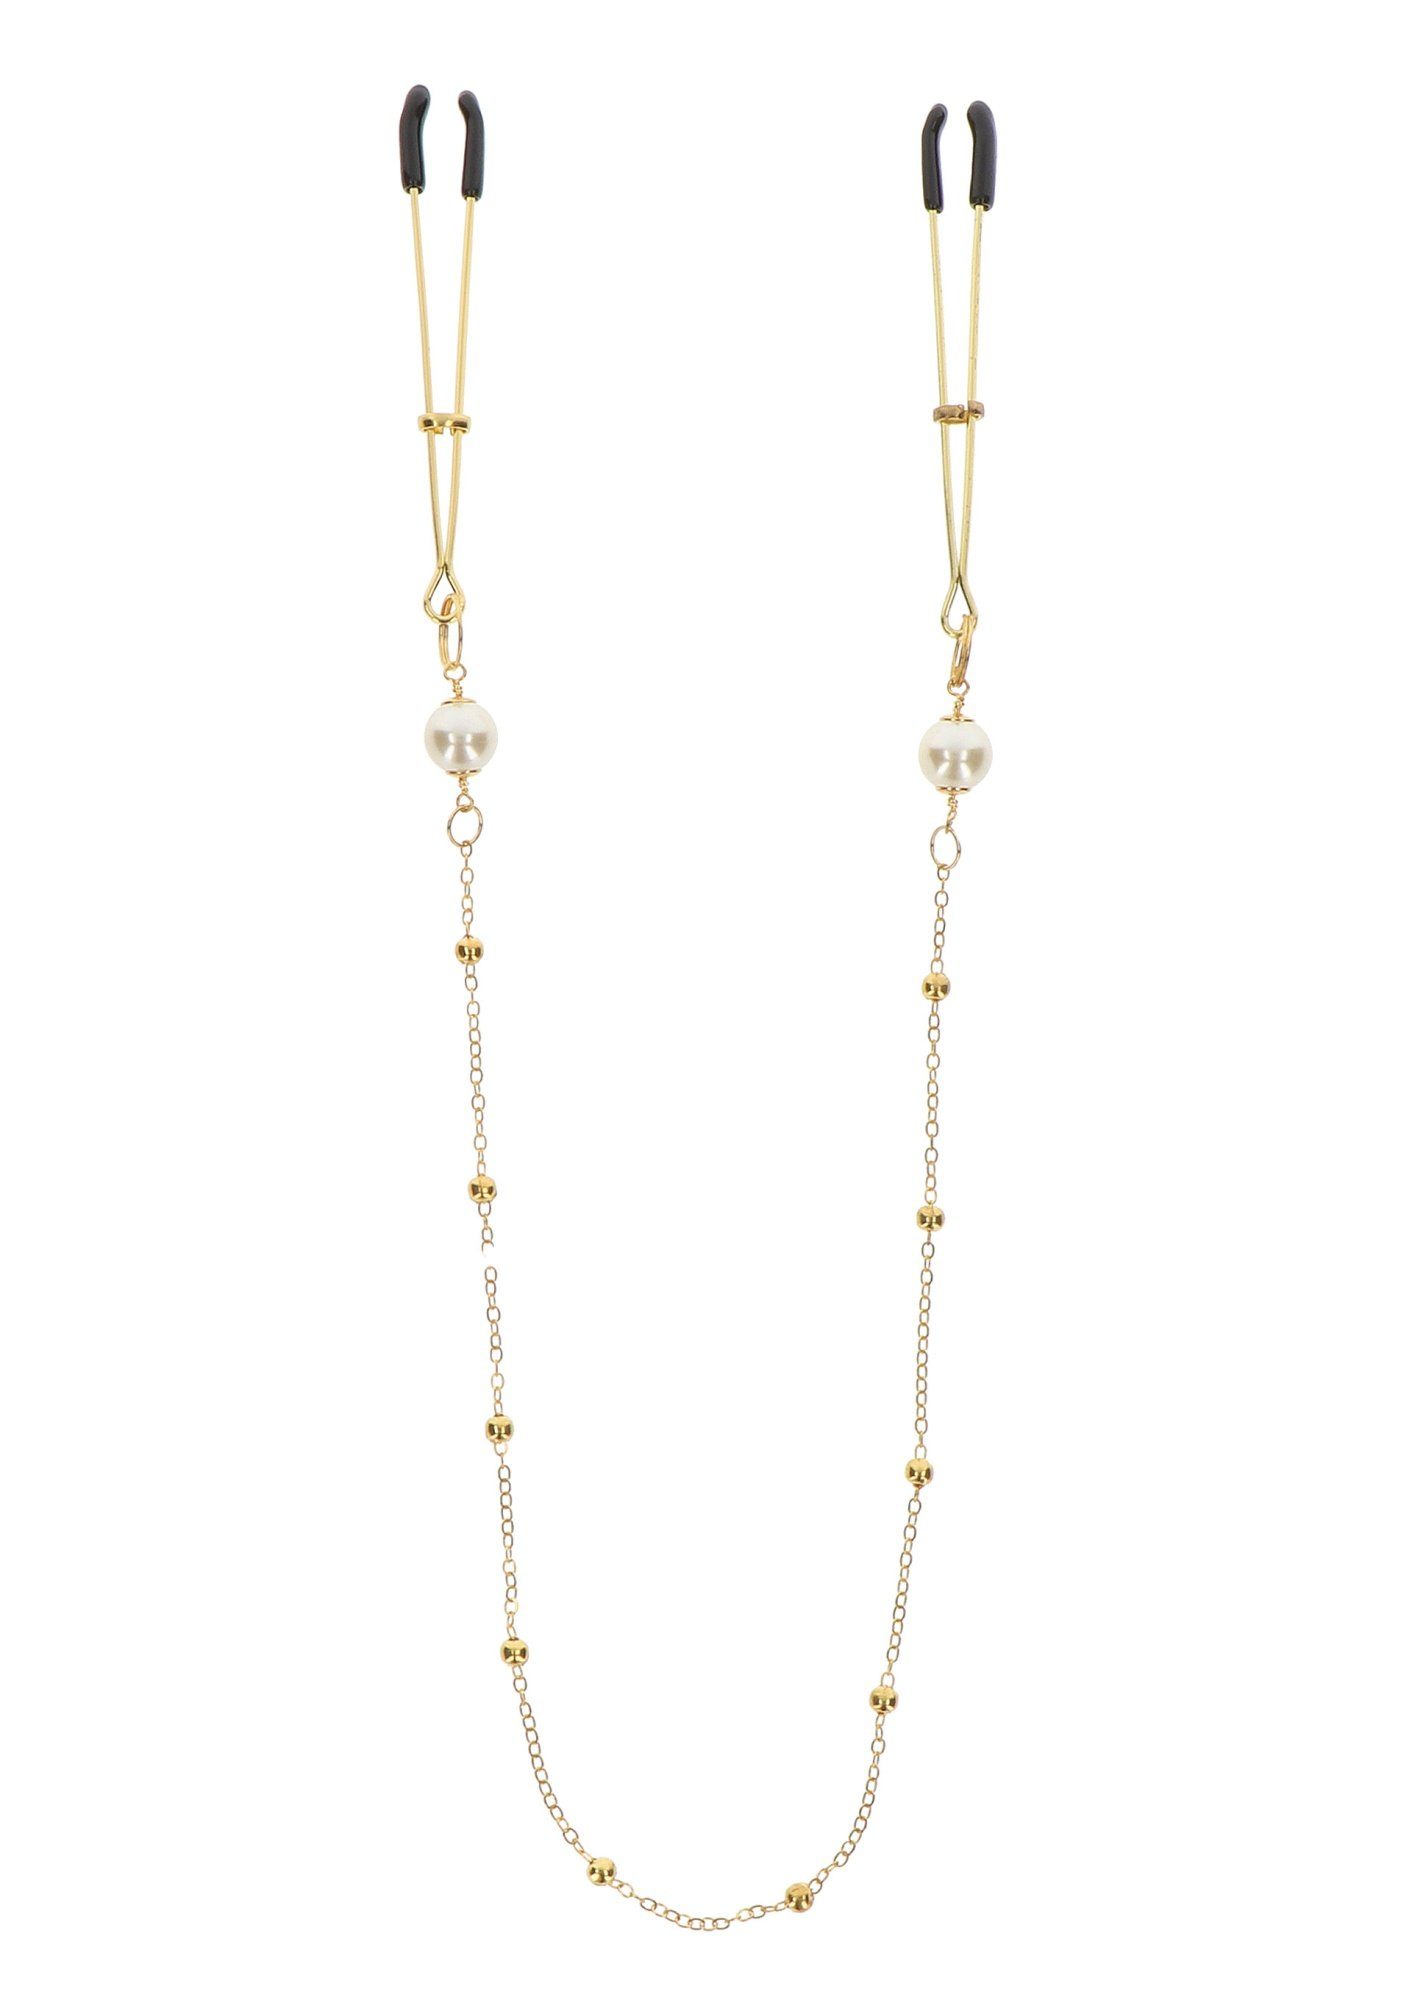 Nippelklemmen gold - Pearl Deluxe Nippelklemmen & mit Taboom Chain Tweezers Perlen